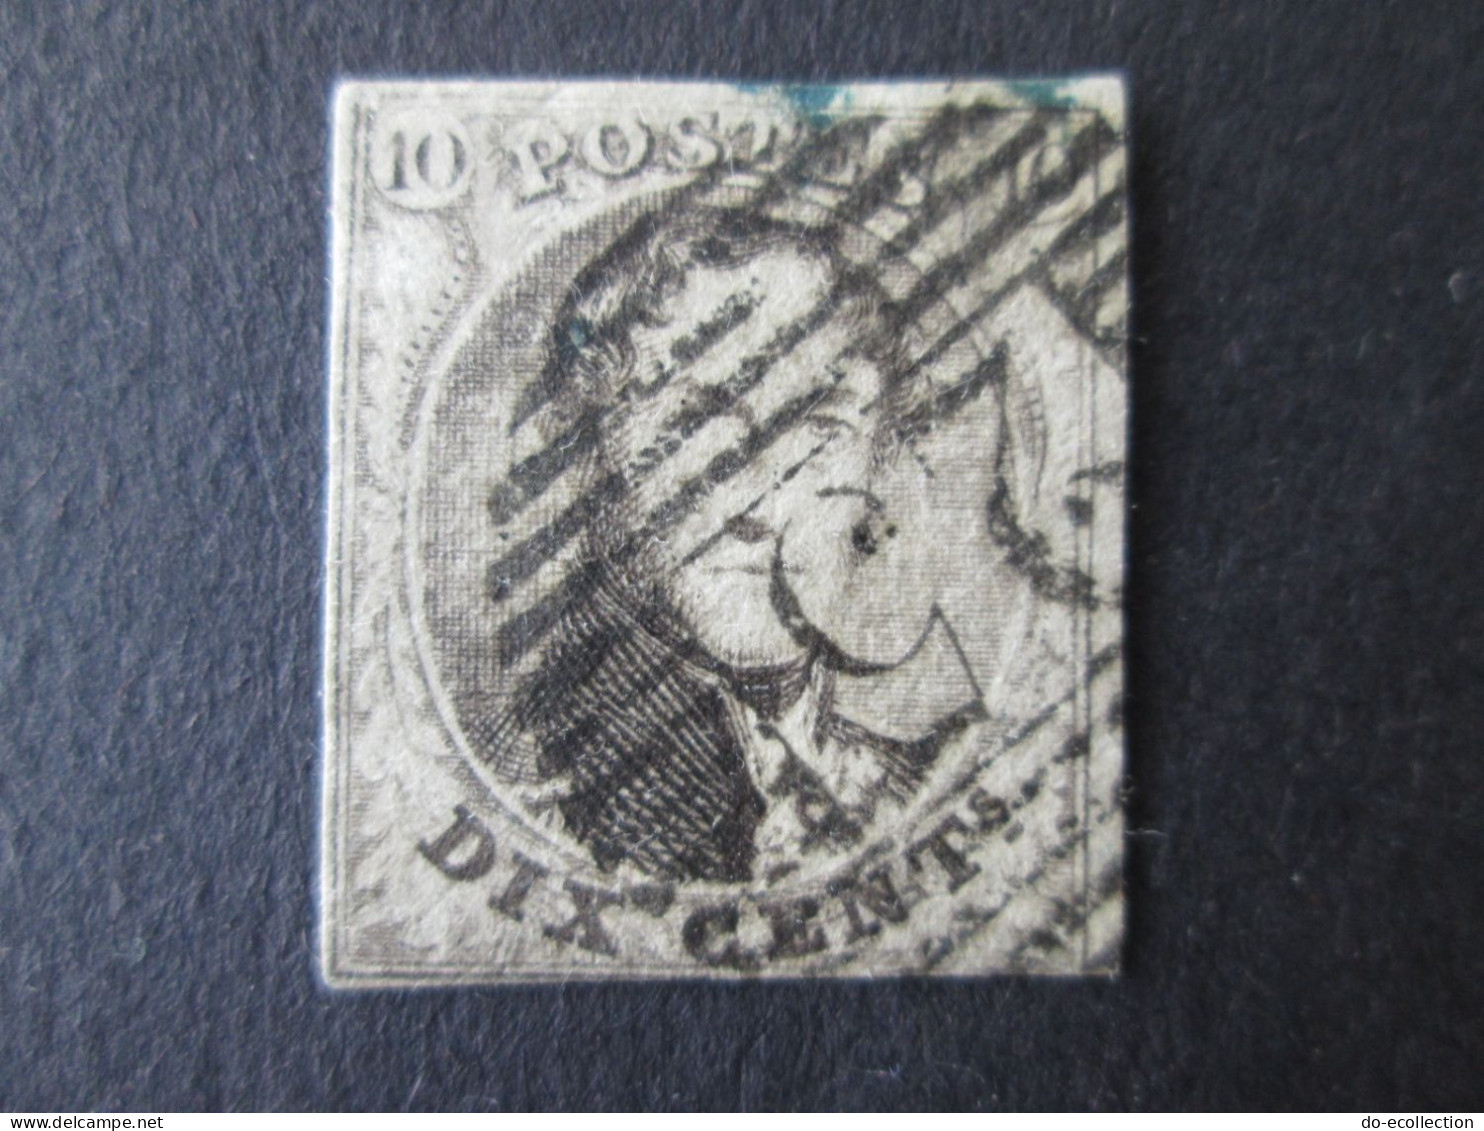 BELGIQUE lot de 4 timbres 10c 20c 40c Leopold I ND dont oblitération 23/25/26 Belgie Belgium timbre stamps